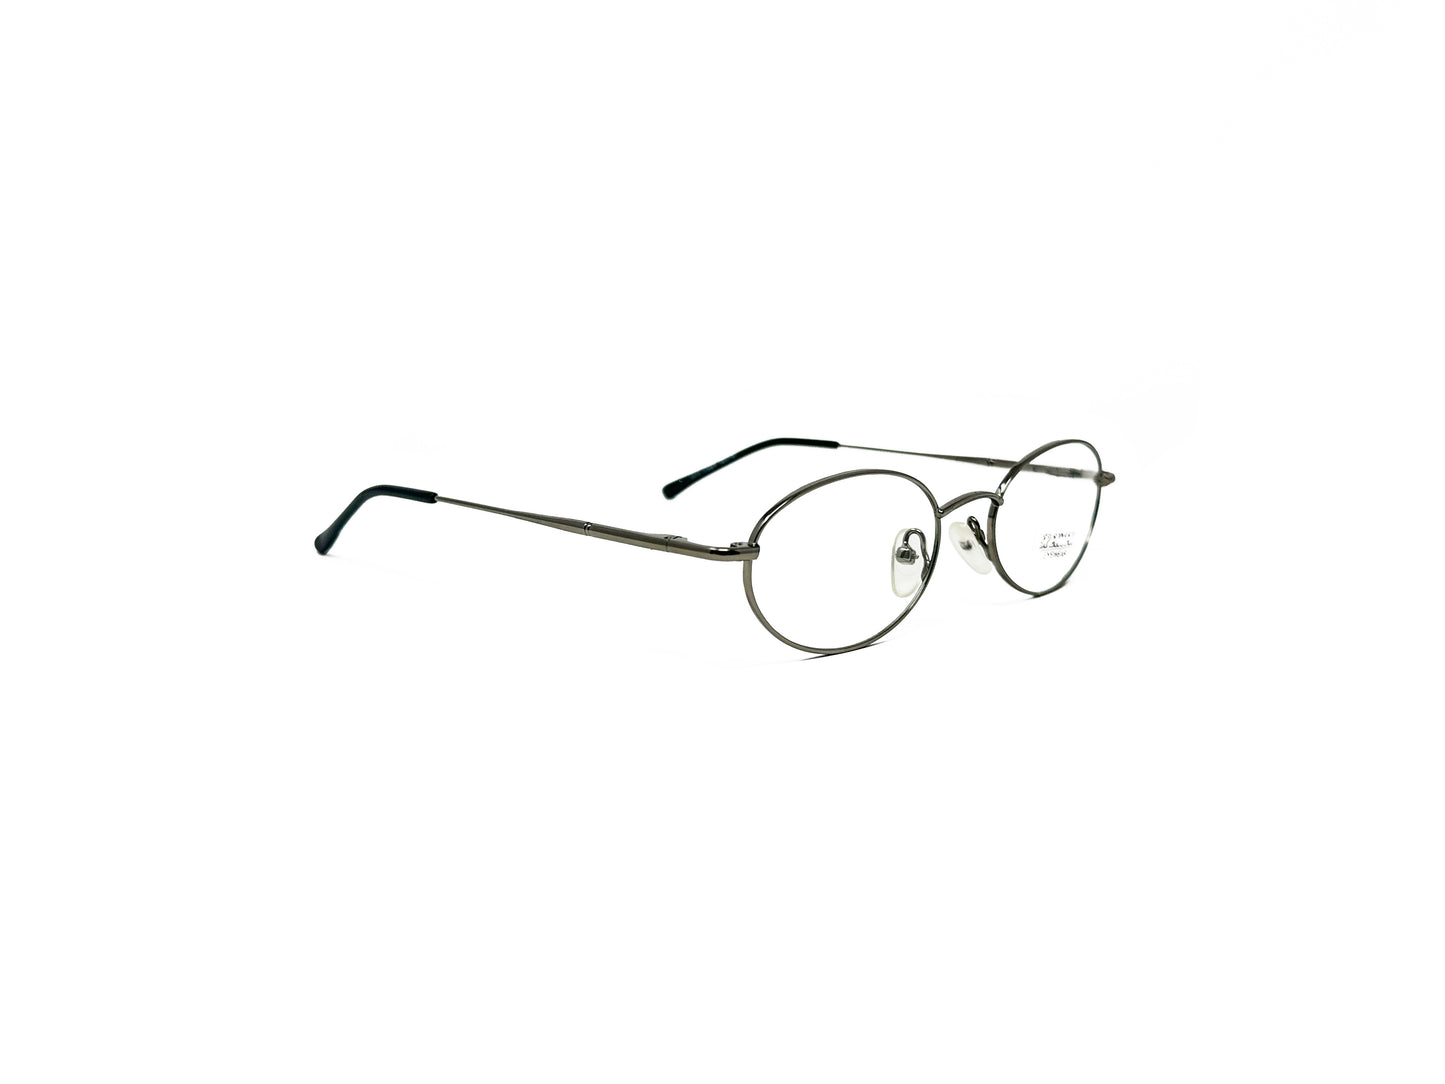 Spektek Eyewear metal, oval optical frame. Model: 0510. Color: G/Met - Gunmetal. Side view.